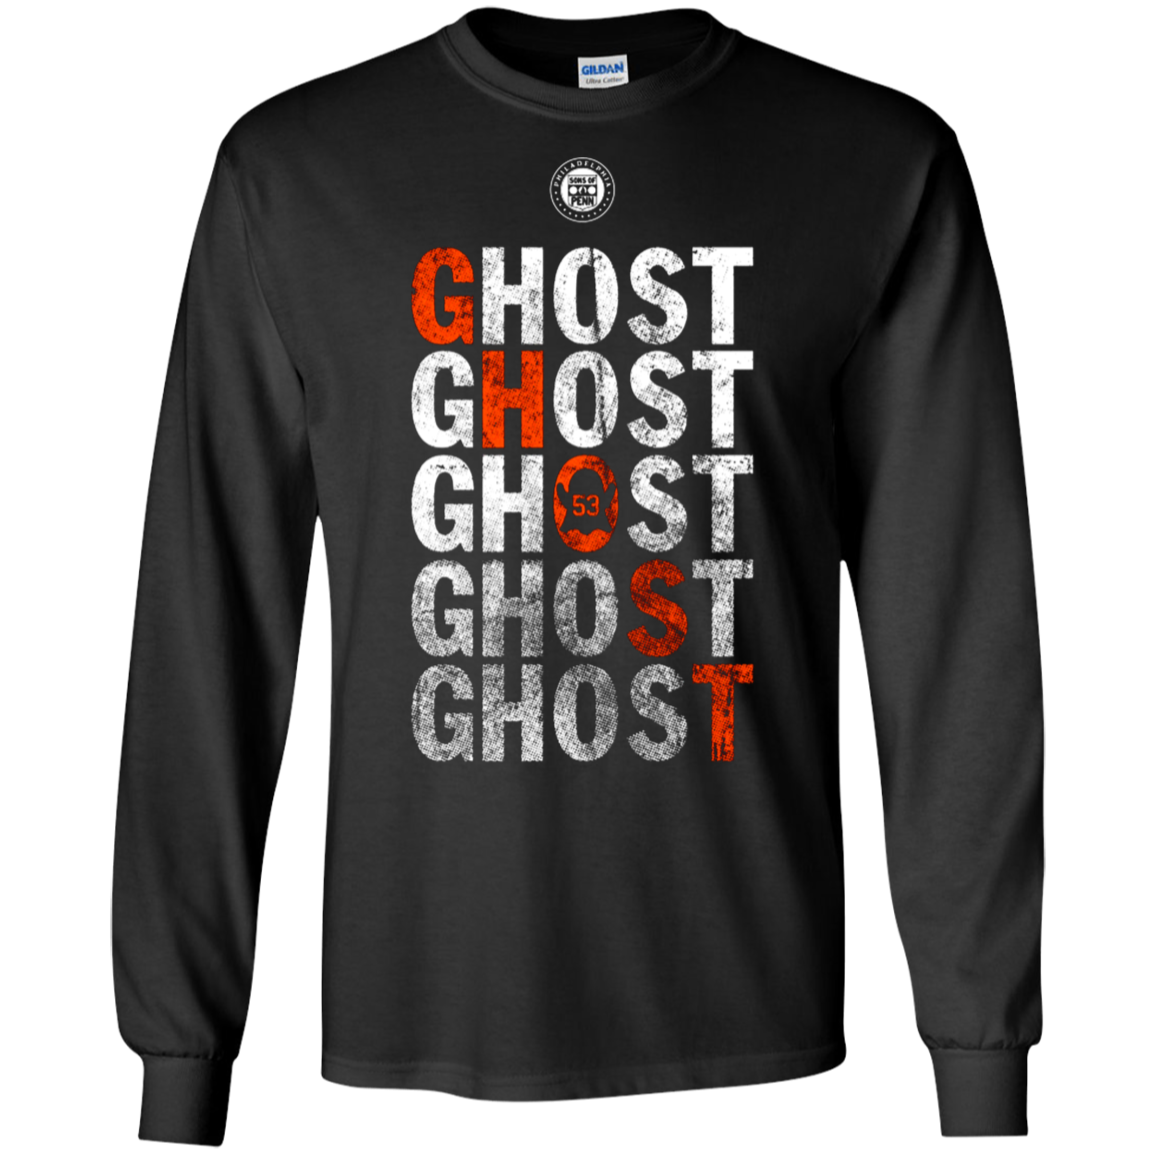 Ghost 53 Shirt G240 Ls Ultra T-shirt